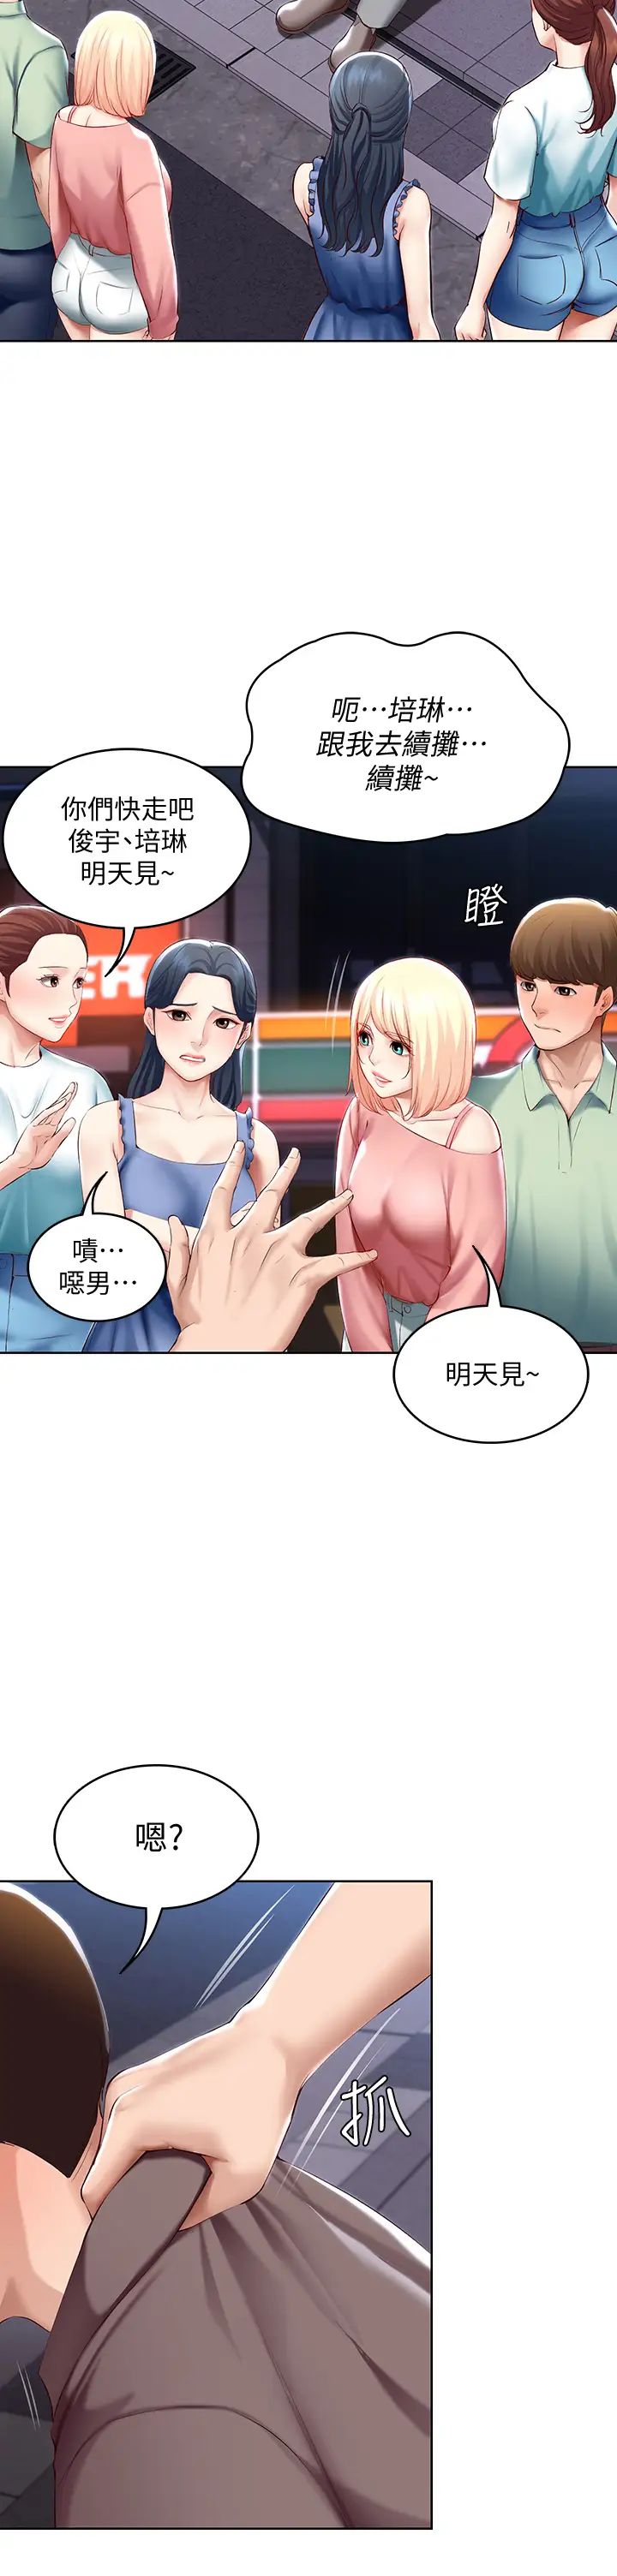 韩国污漫画 寄宿日記 第63话培琳的直球诱惑 29